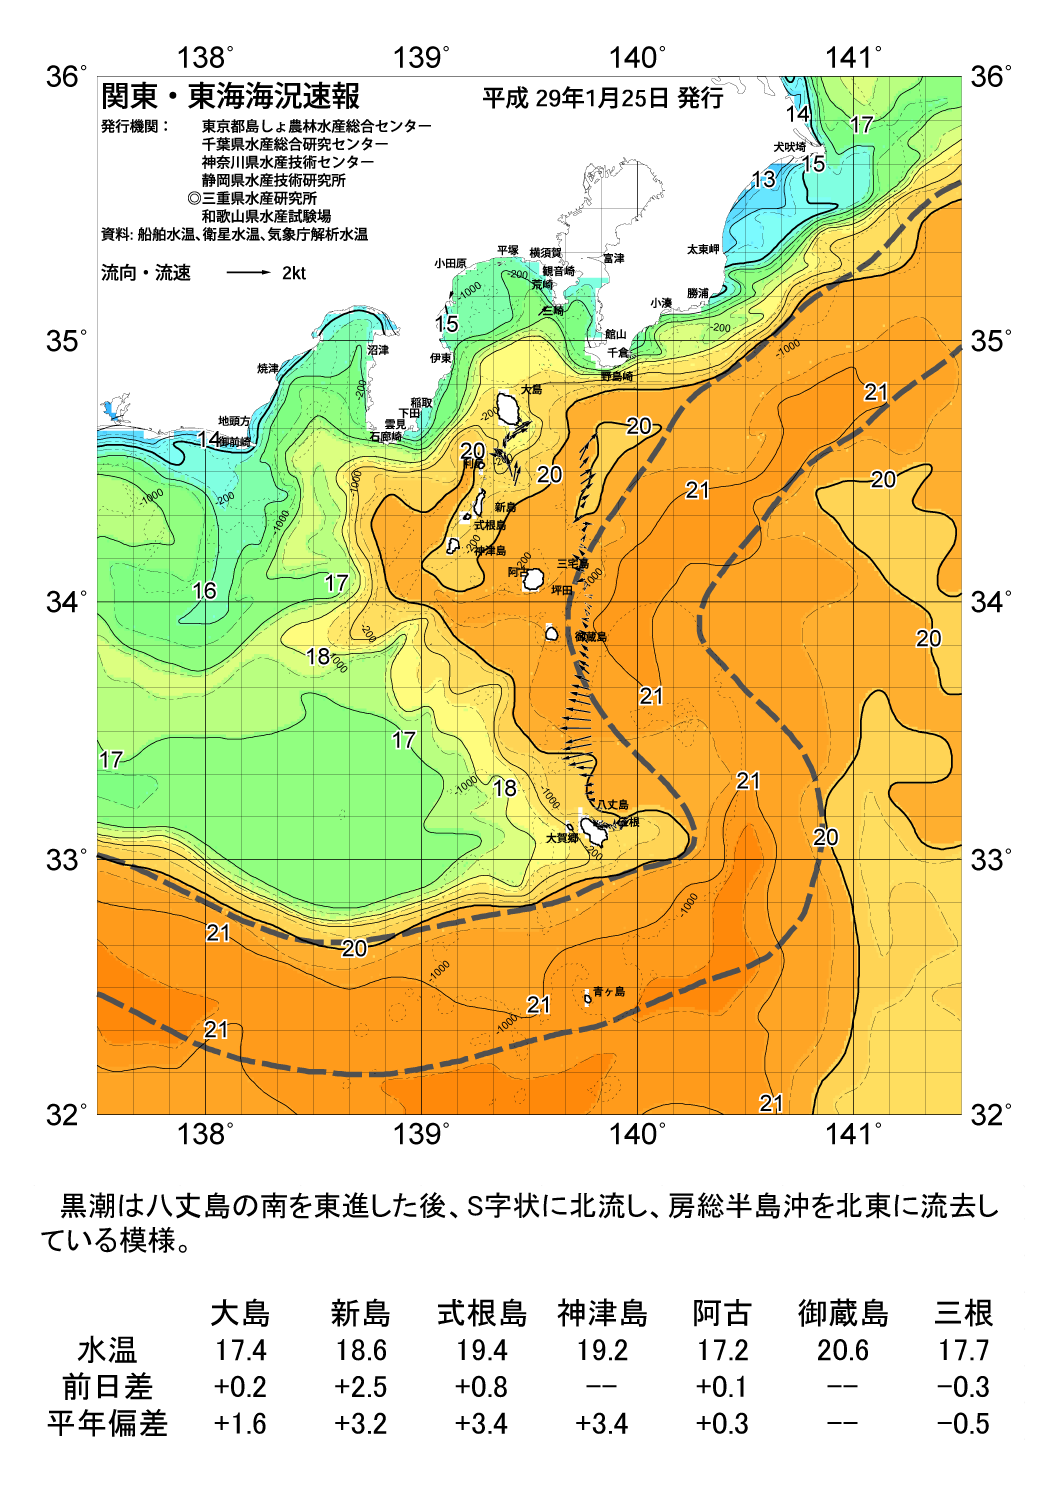 海の天気図2017年1月25日 東京都島しょ農林水産総合センター